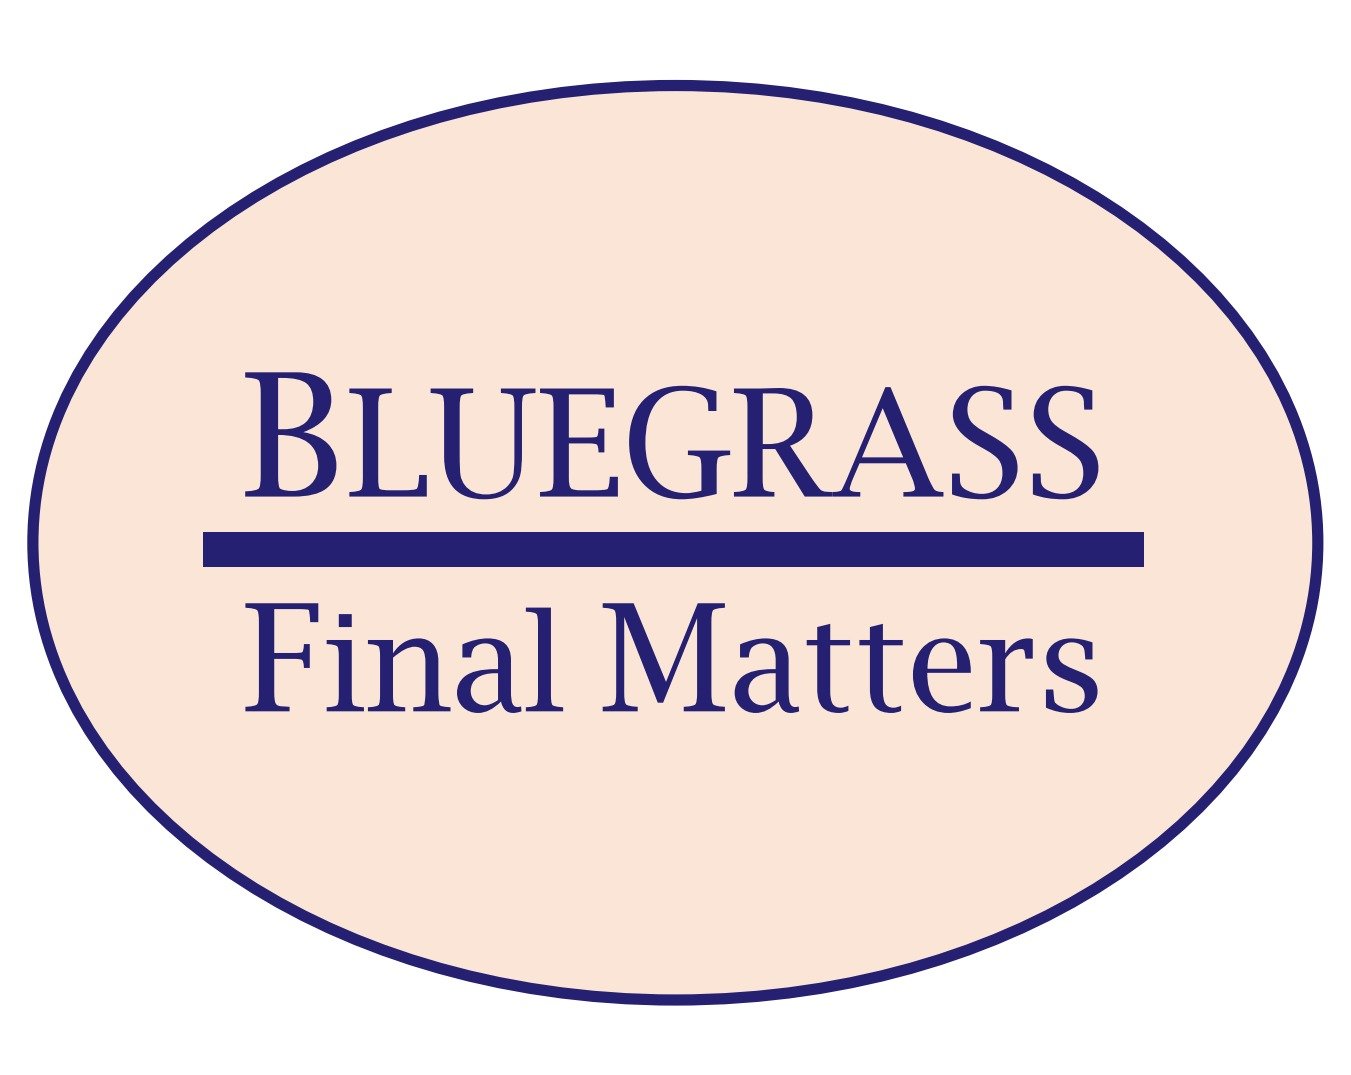 Bluegrass Final Matters LLC